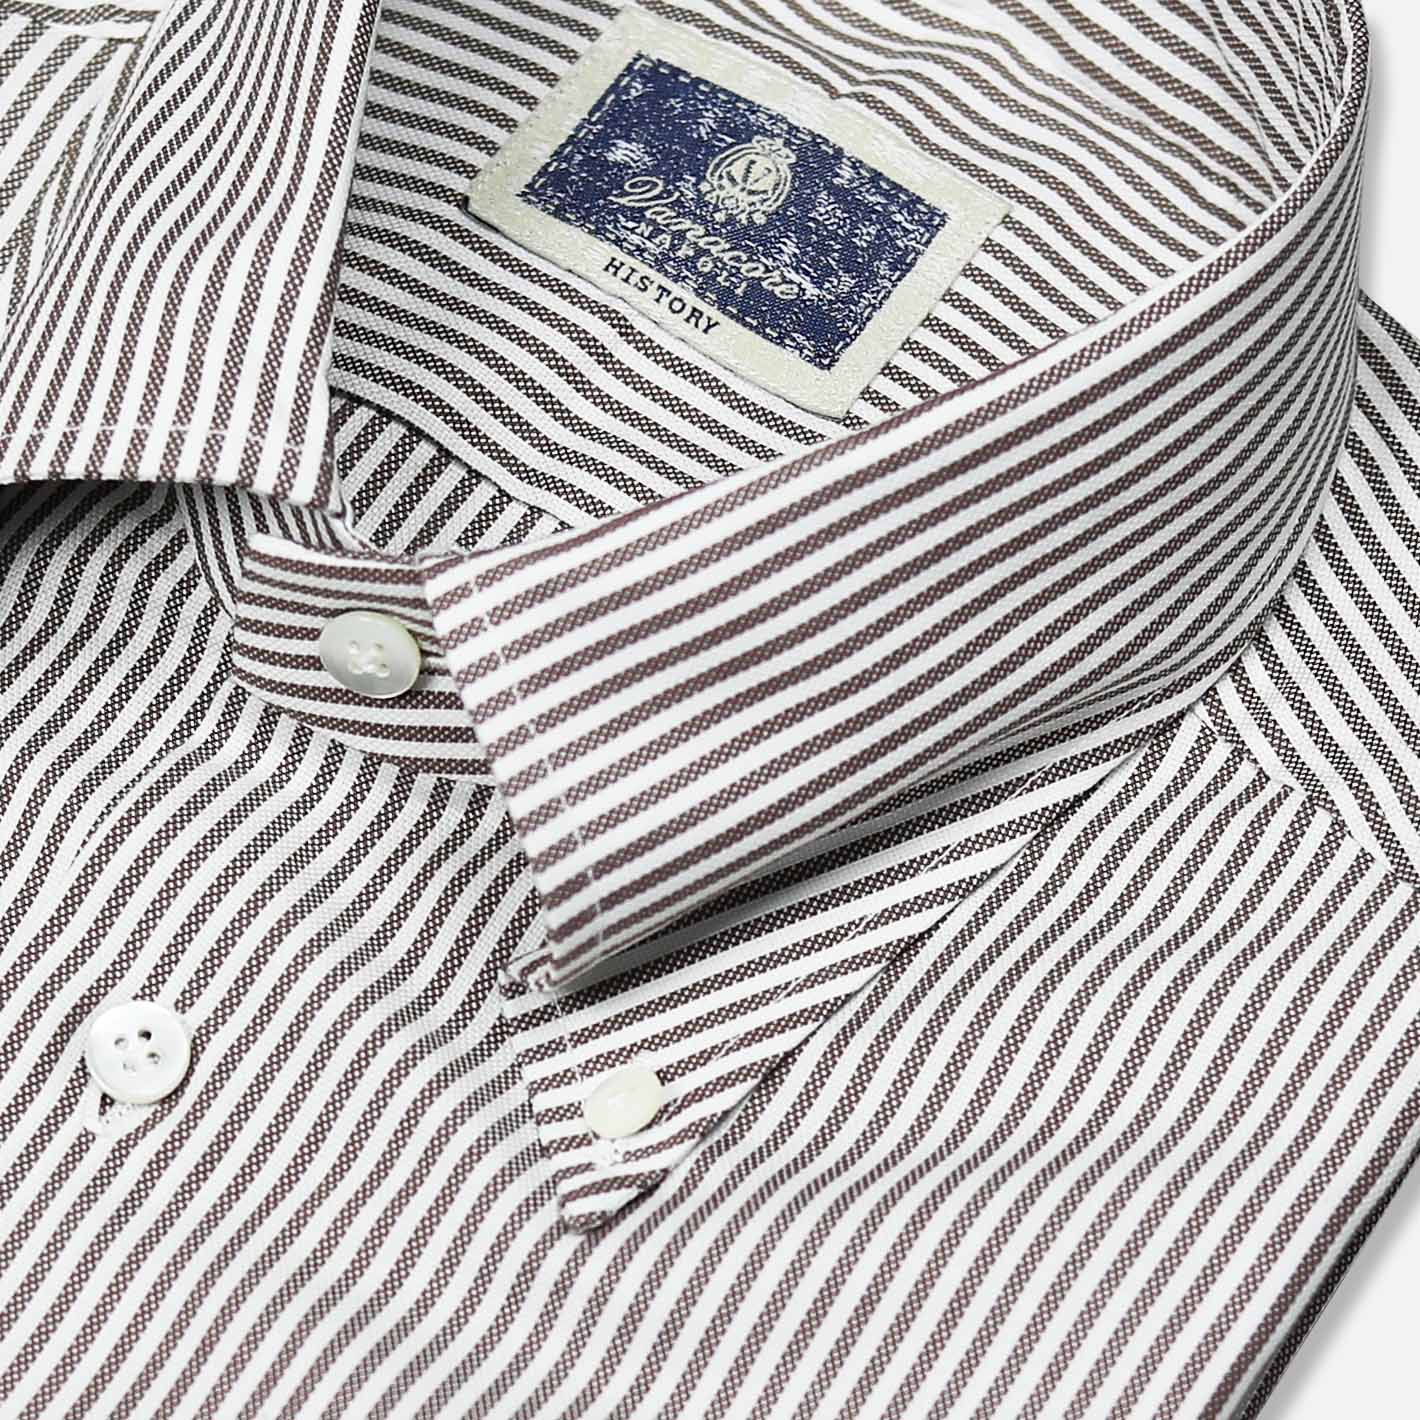 Brown White Striped Oxford Button Down Shirt